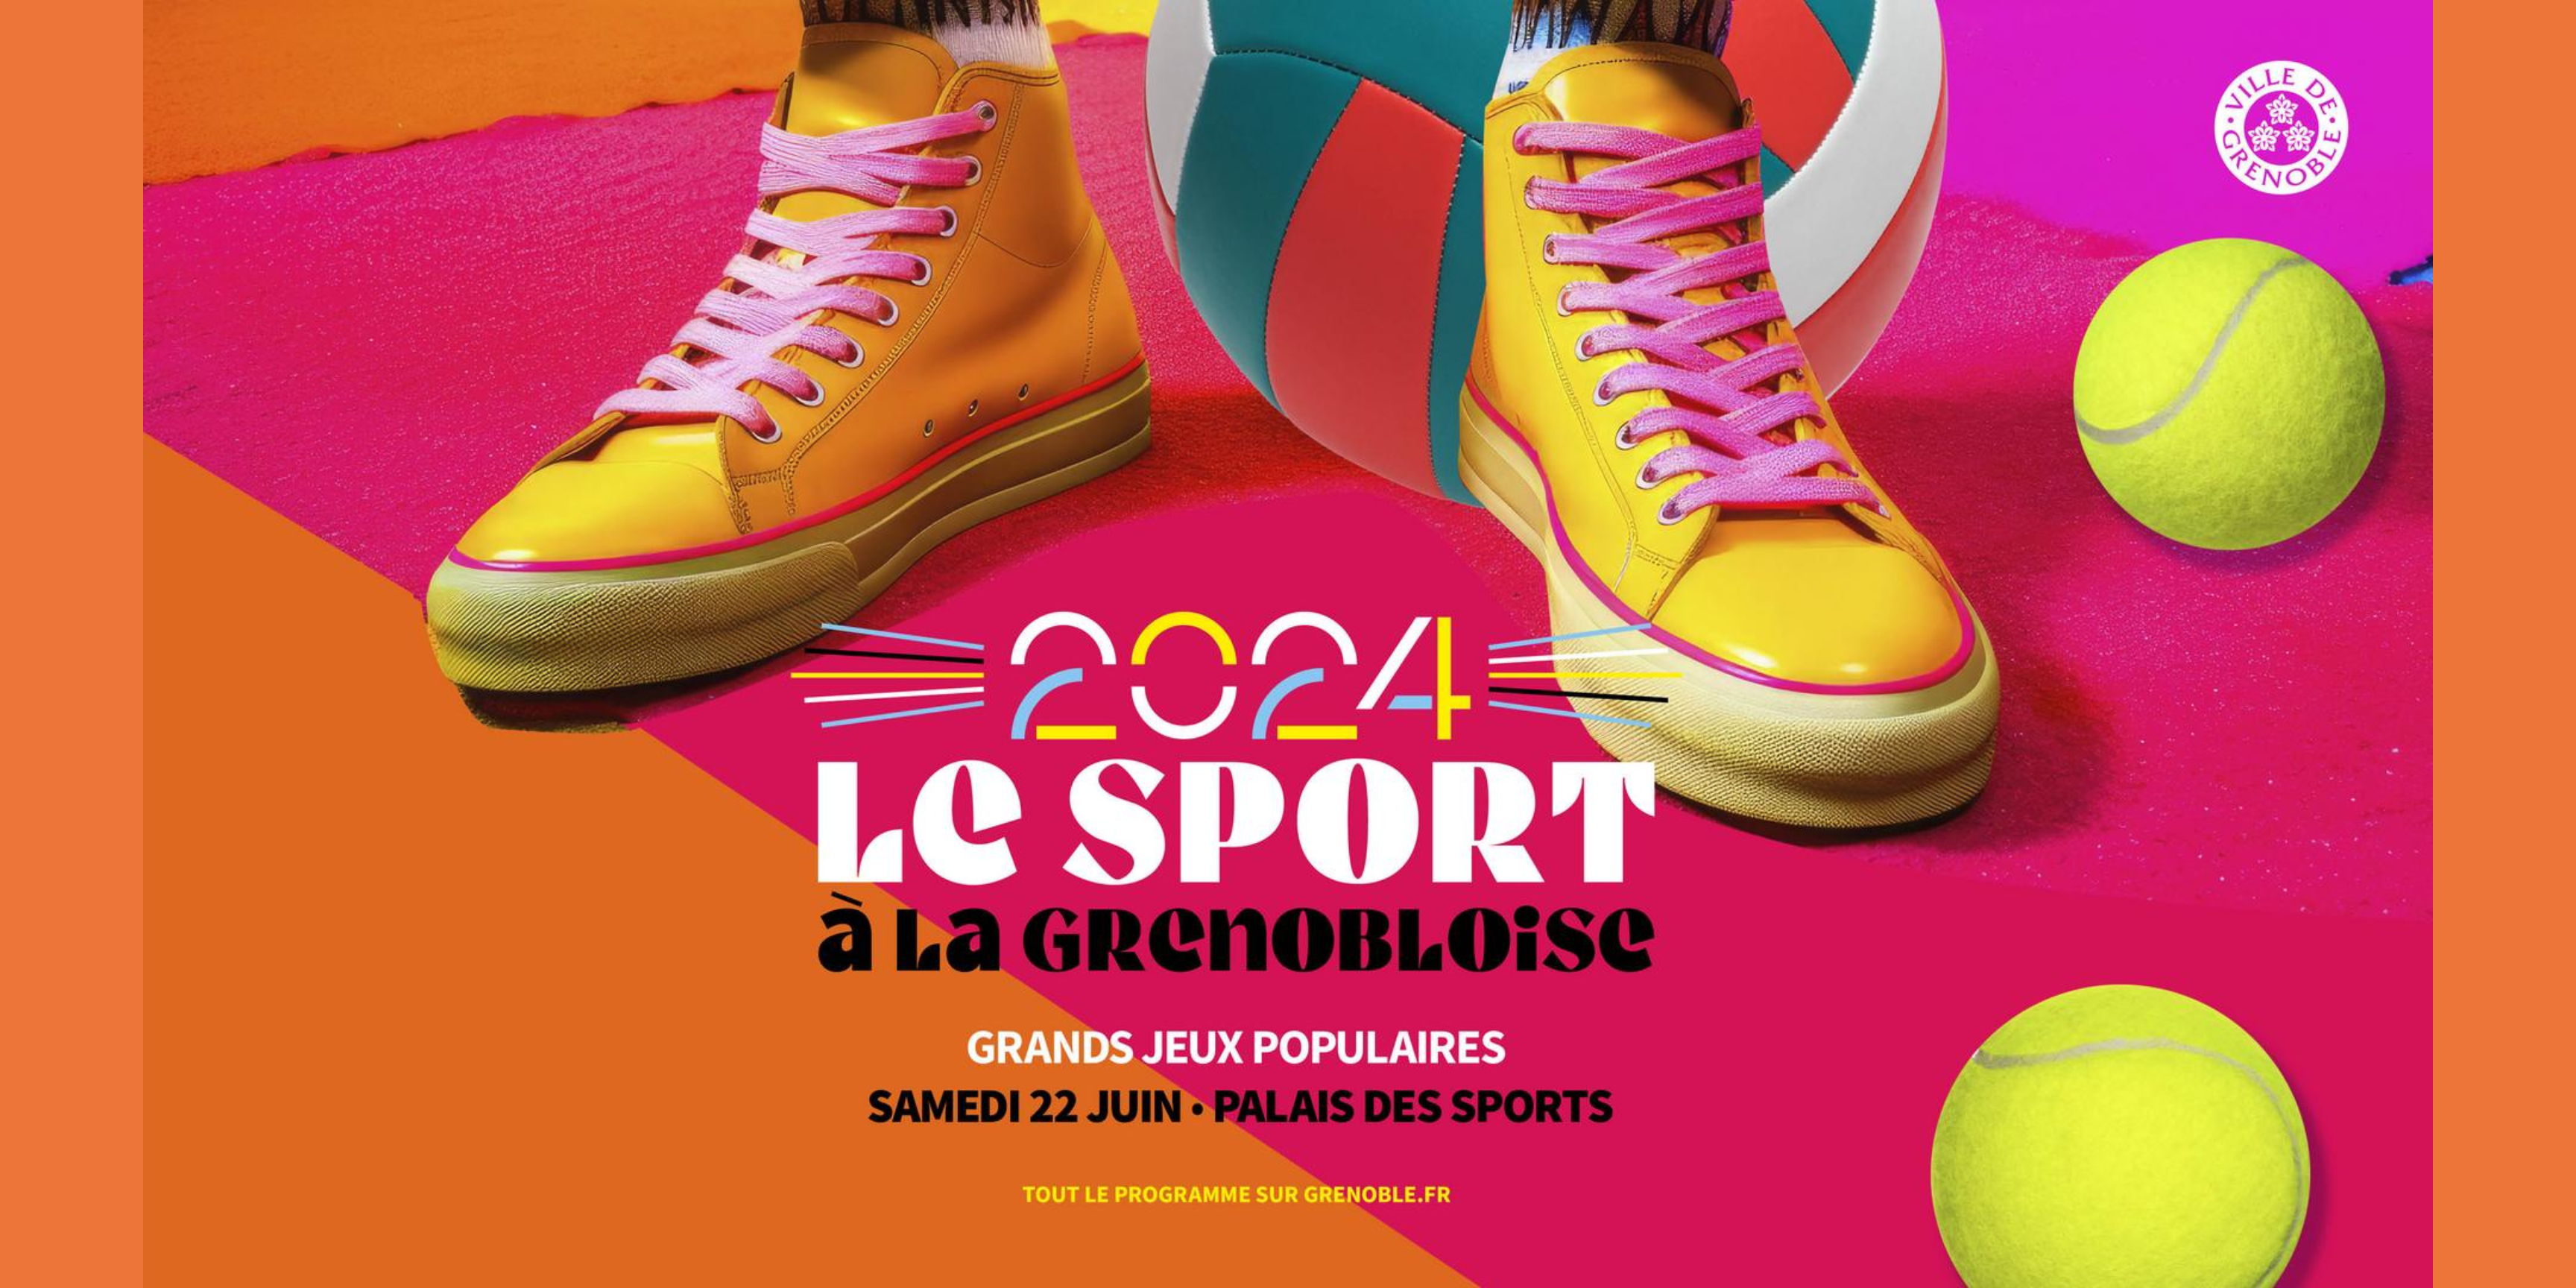 Le sport à la Grenobloise durant les Grands Jeux Populaires de la ville de Grenoble organisé le 22 juin 2024